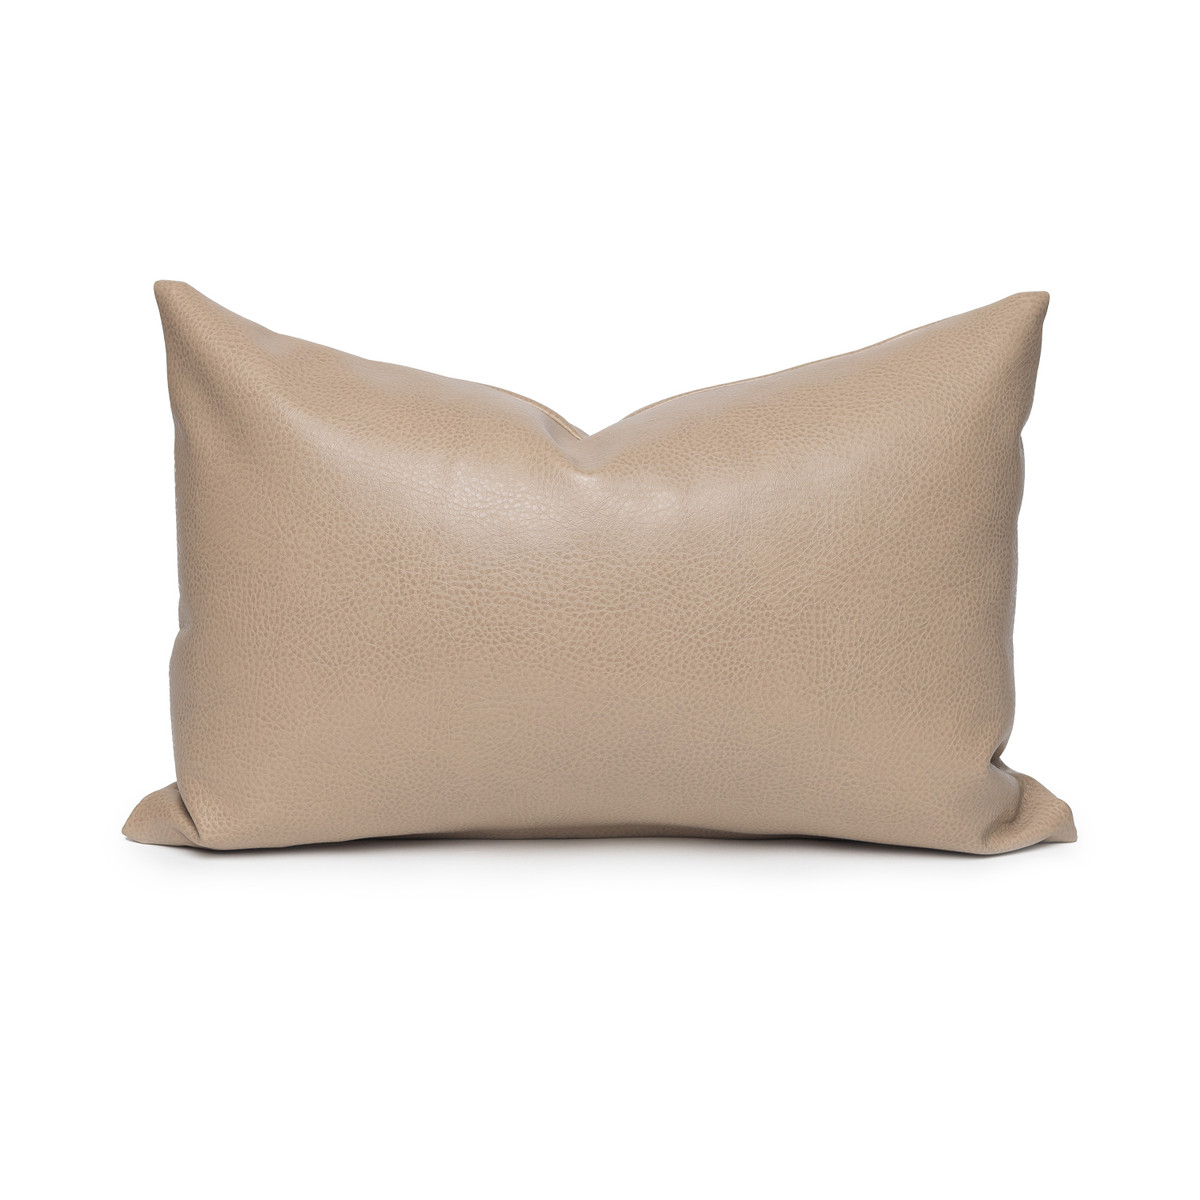 Russet Lumbar Faux Leather Pillow, Decorative Pillows